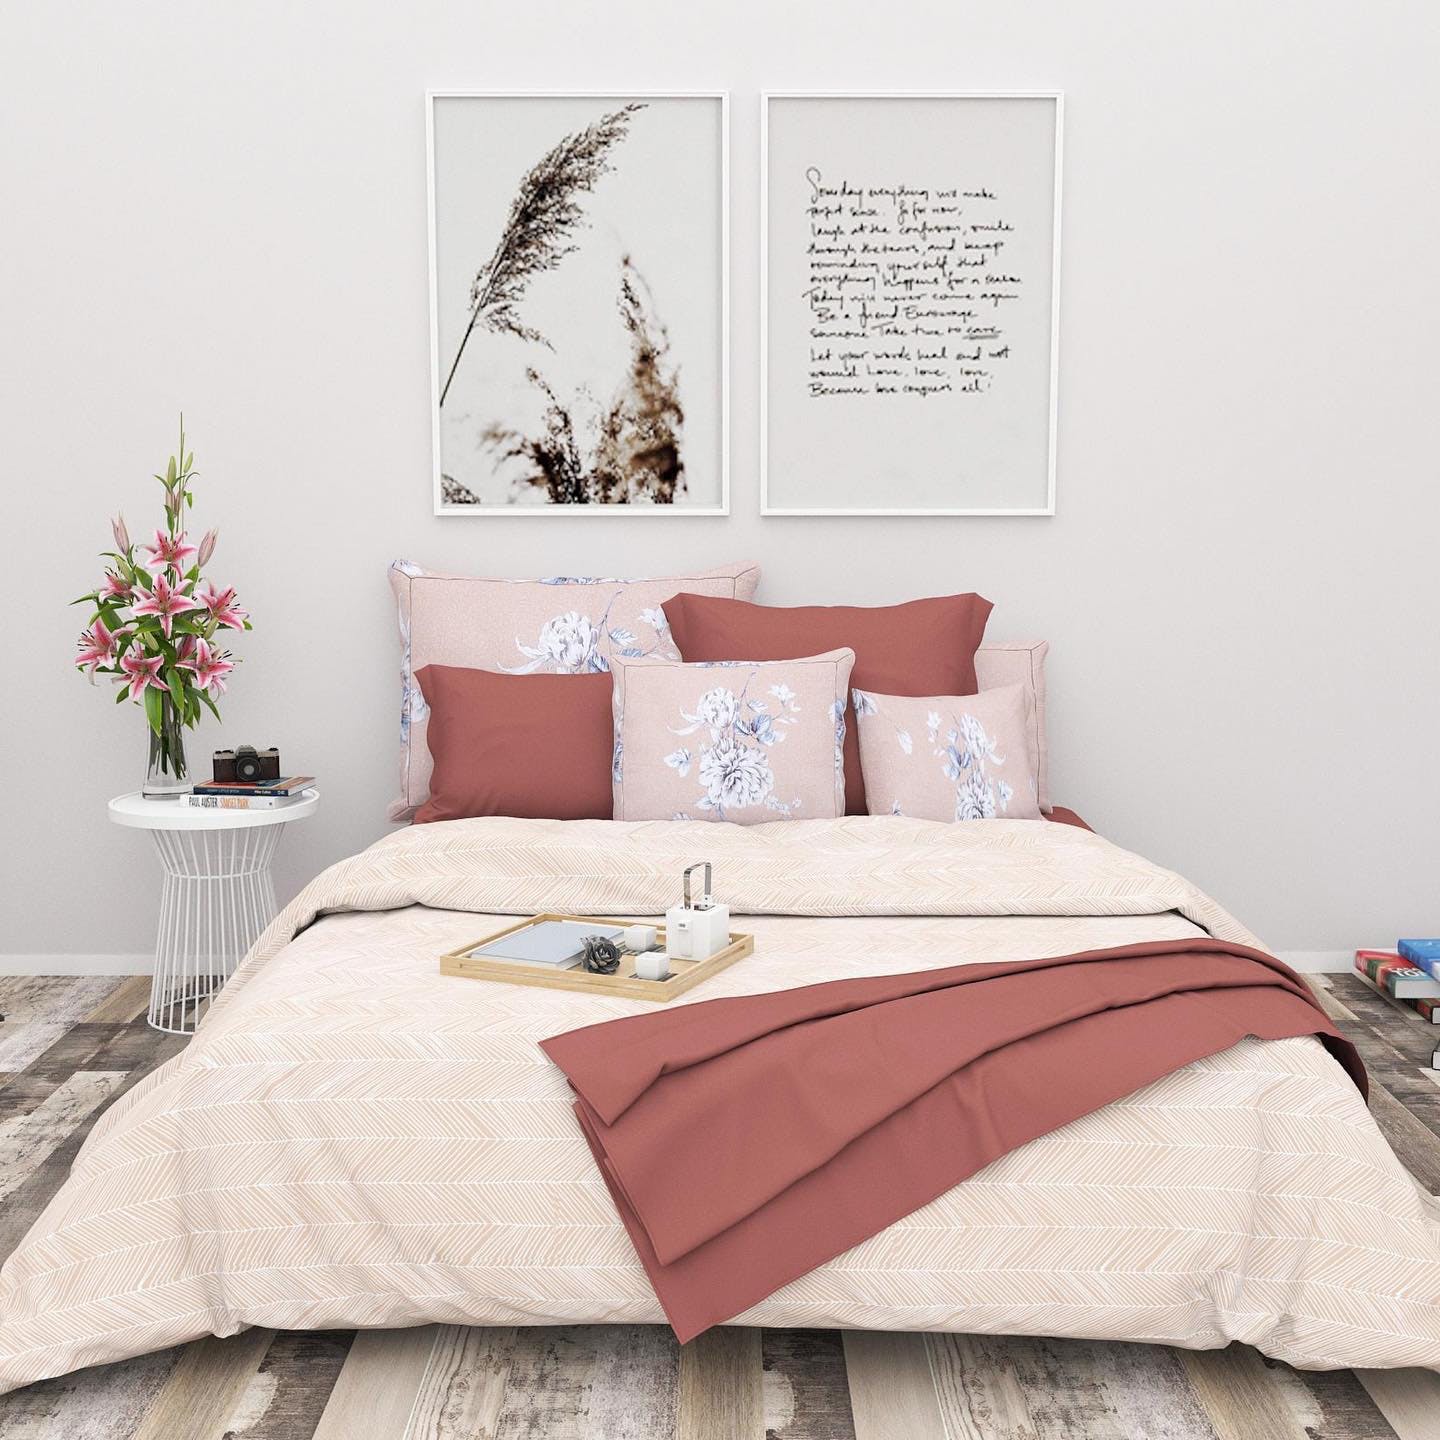 Bedroom,Bed,Bedding,Bed sheet,Furniture,Room,Bed frame,Duvet cover,Pink,Textile